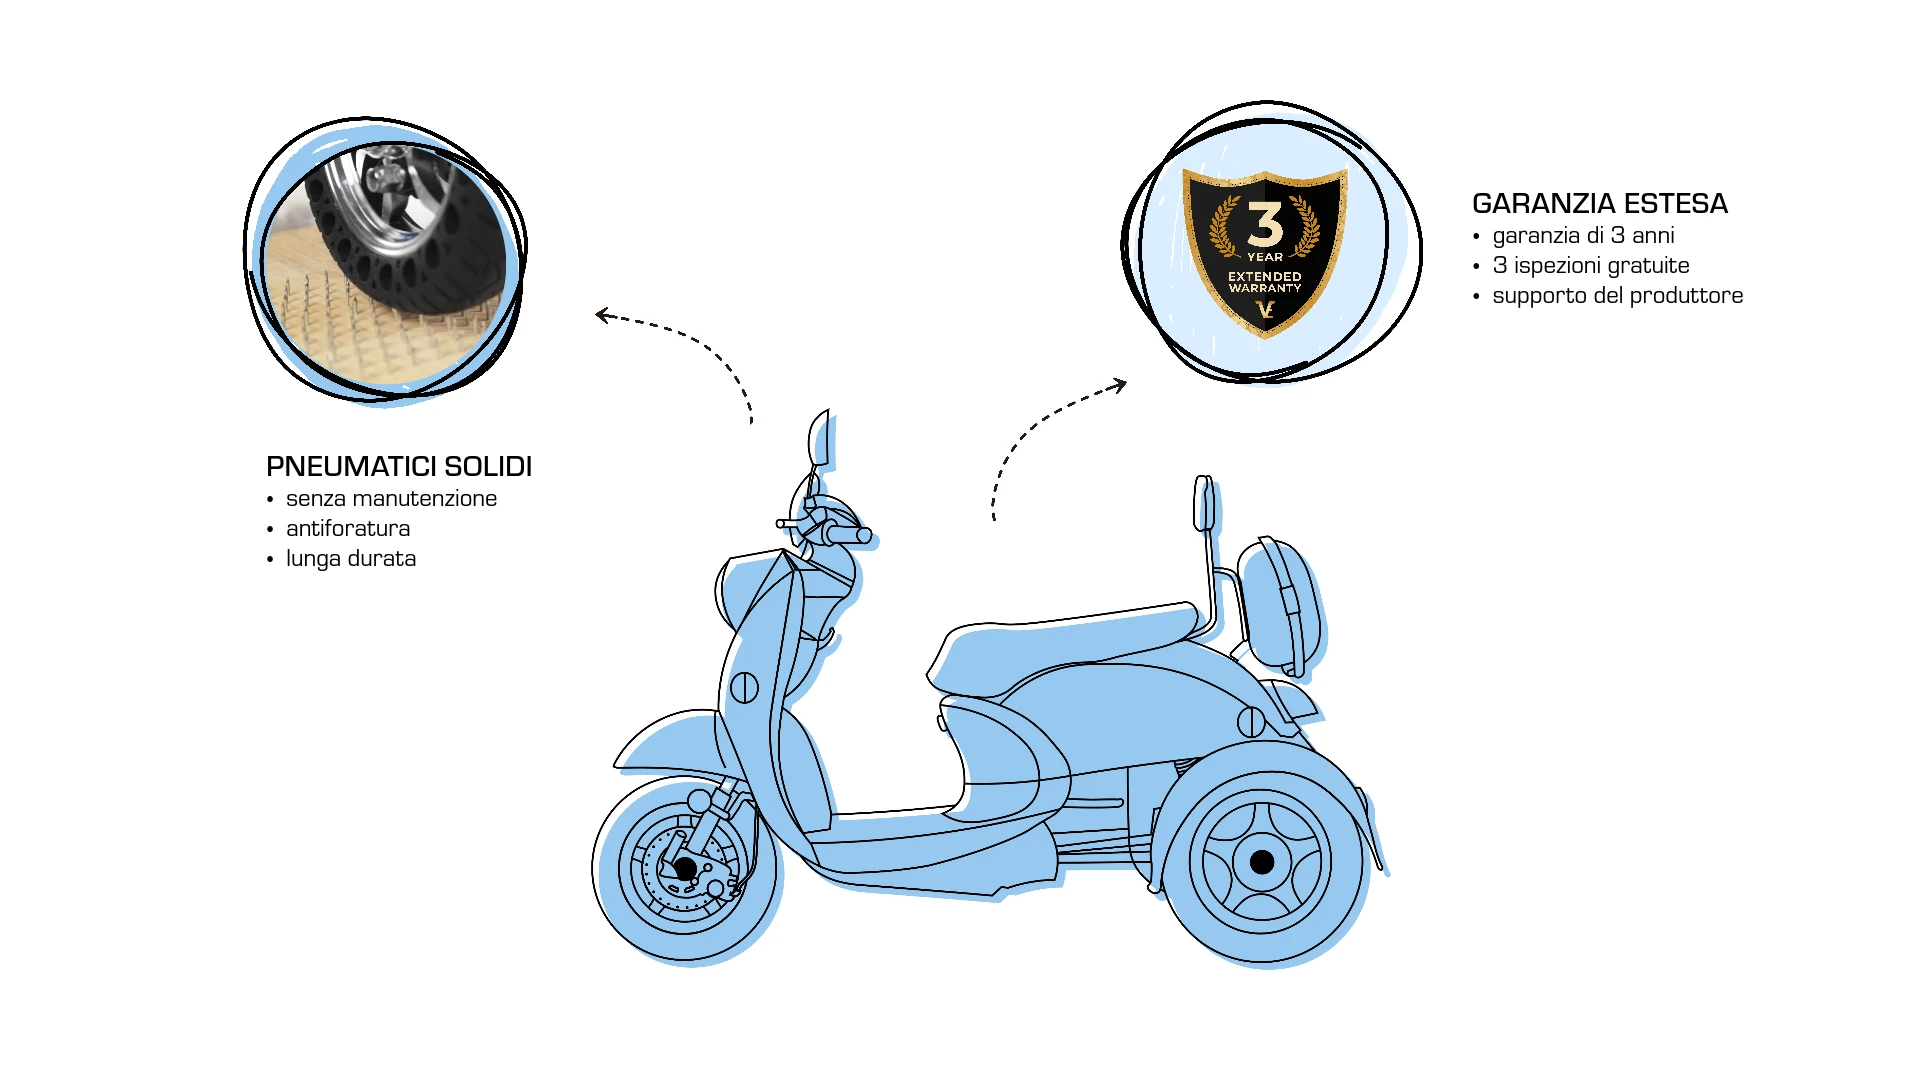 Extra, aggiornamenti, pneumatici solidi per scooter Veleco ZT63, estensione della garanzia